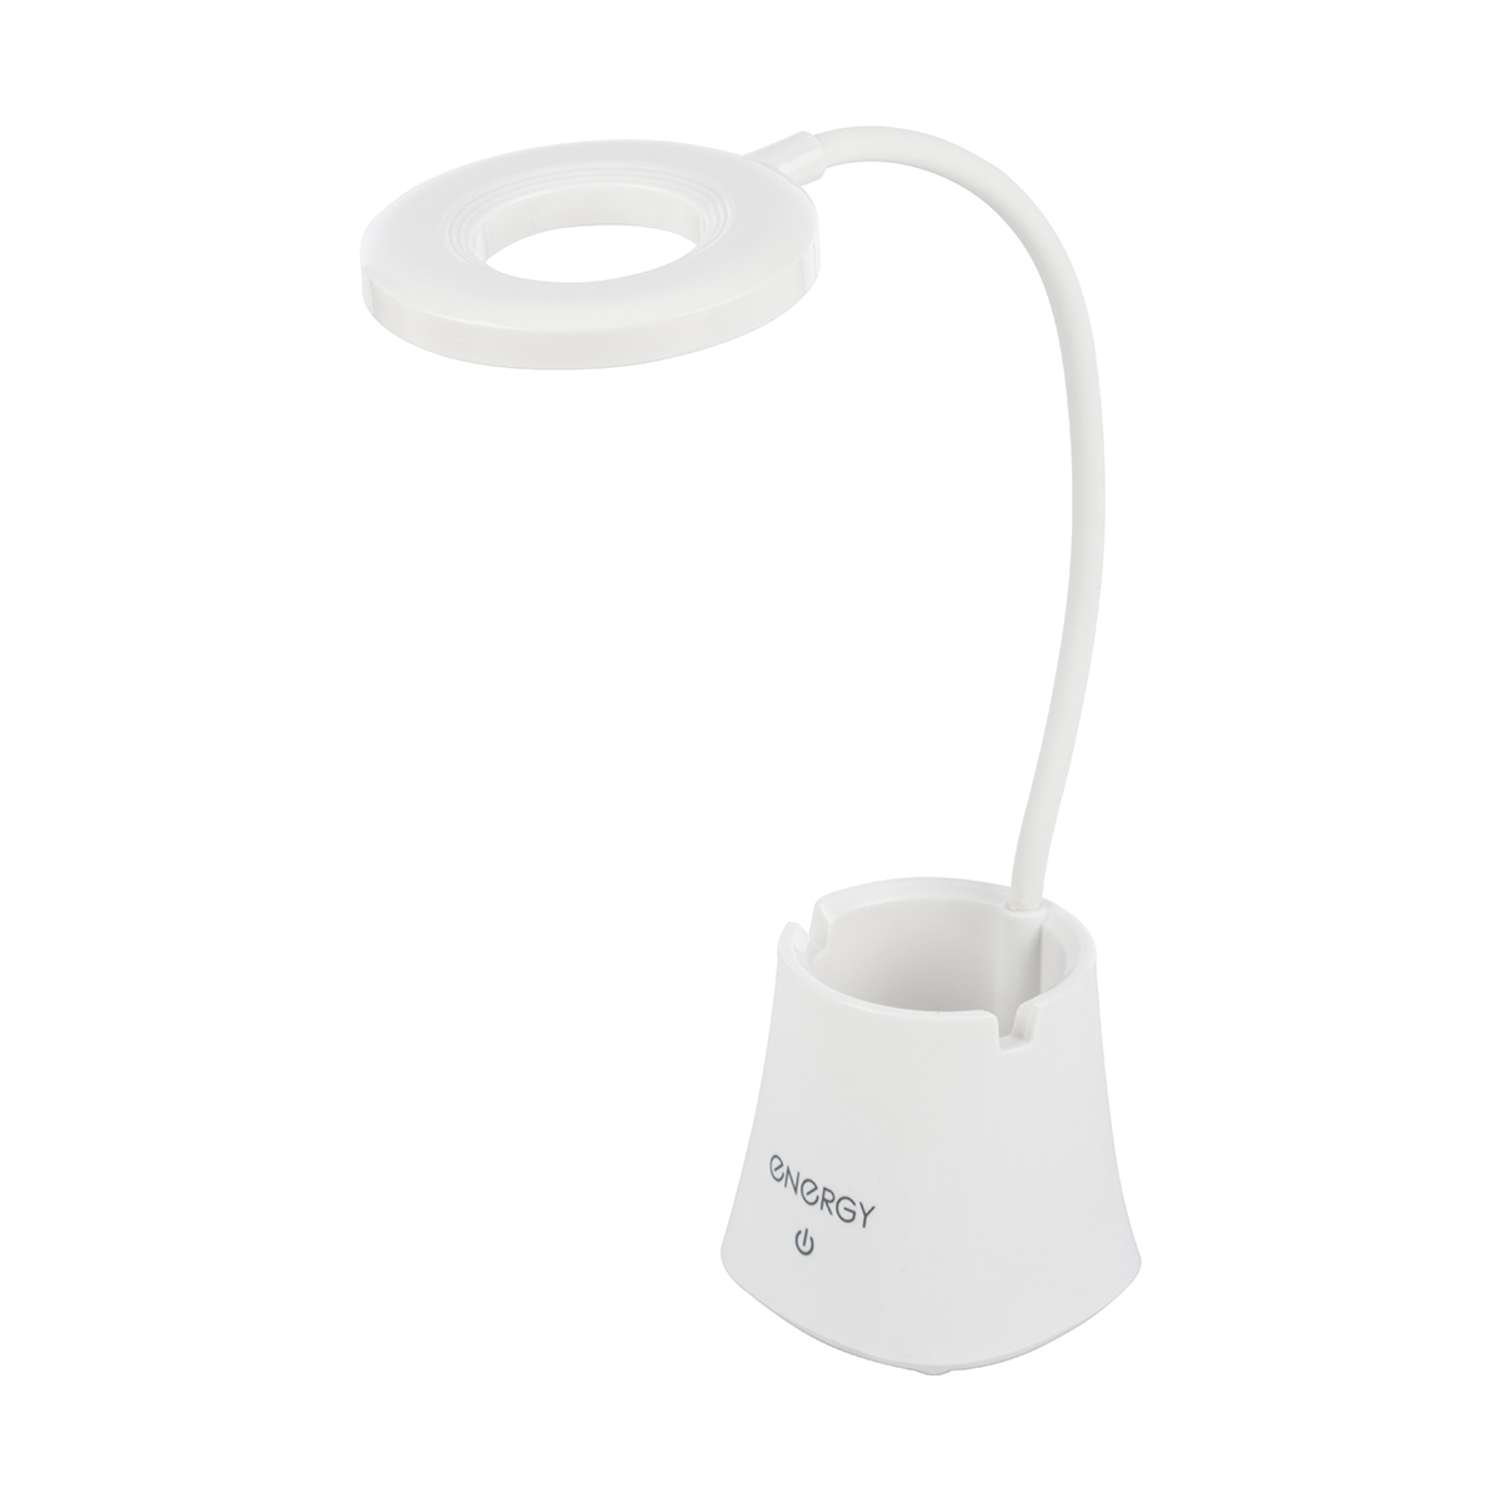 Лампа электрическая Energy настольная EN-LED32 белая - фото 1